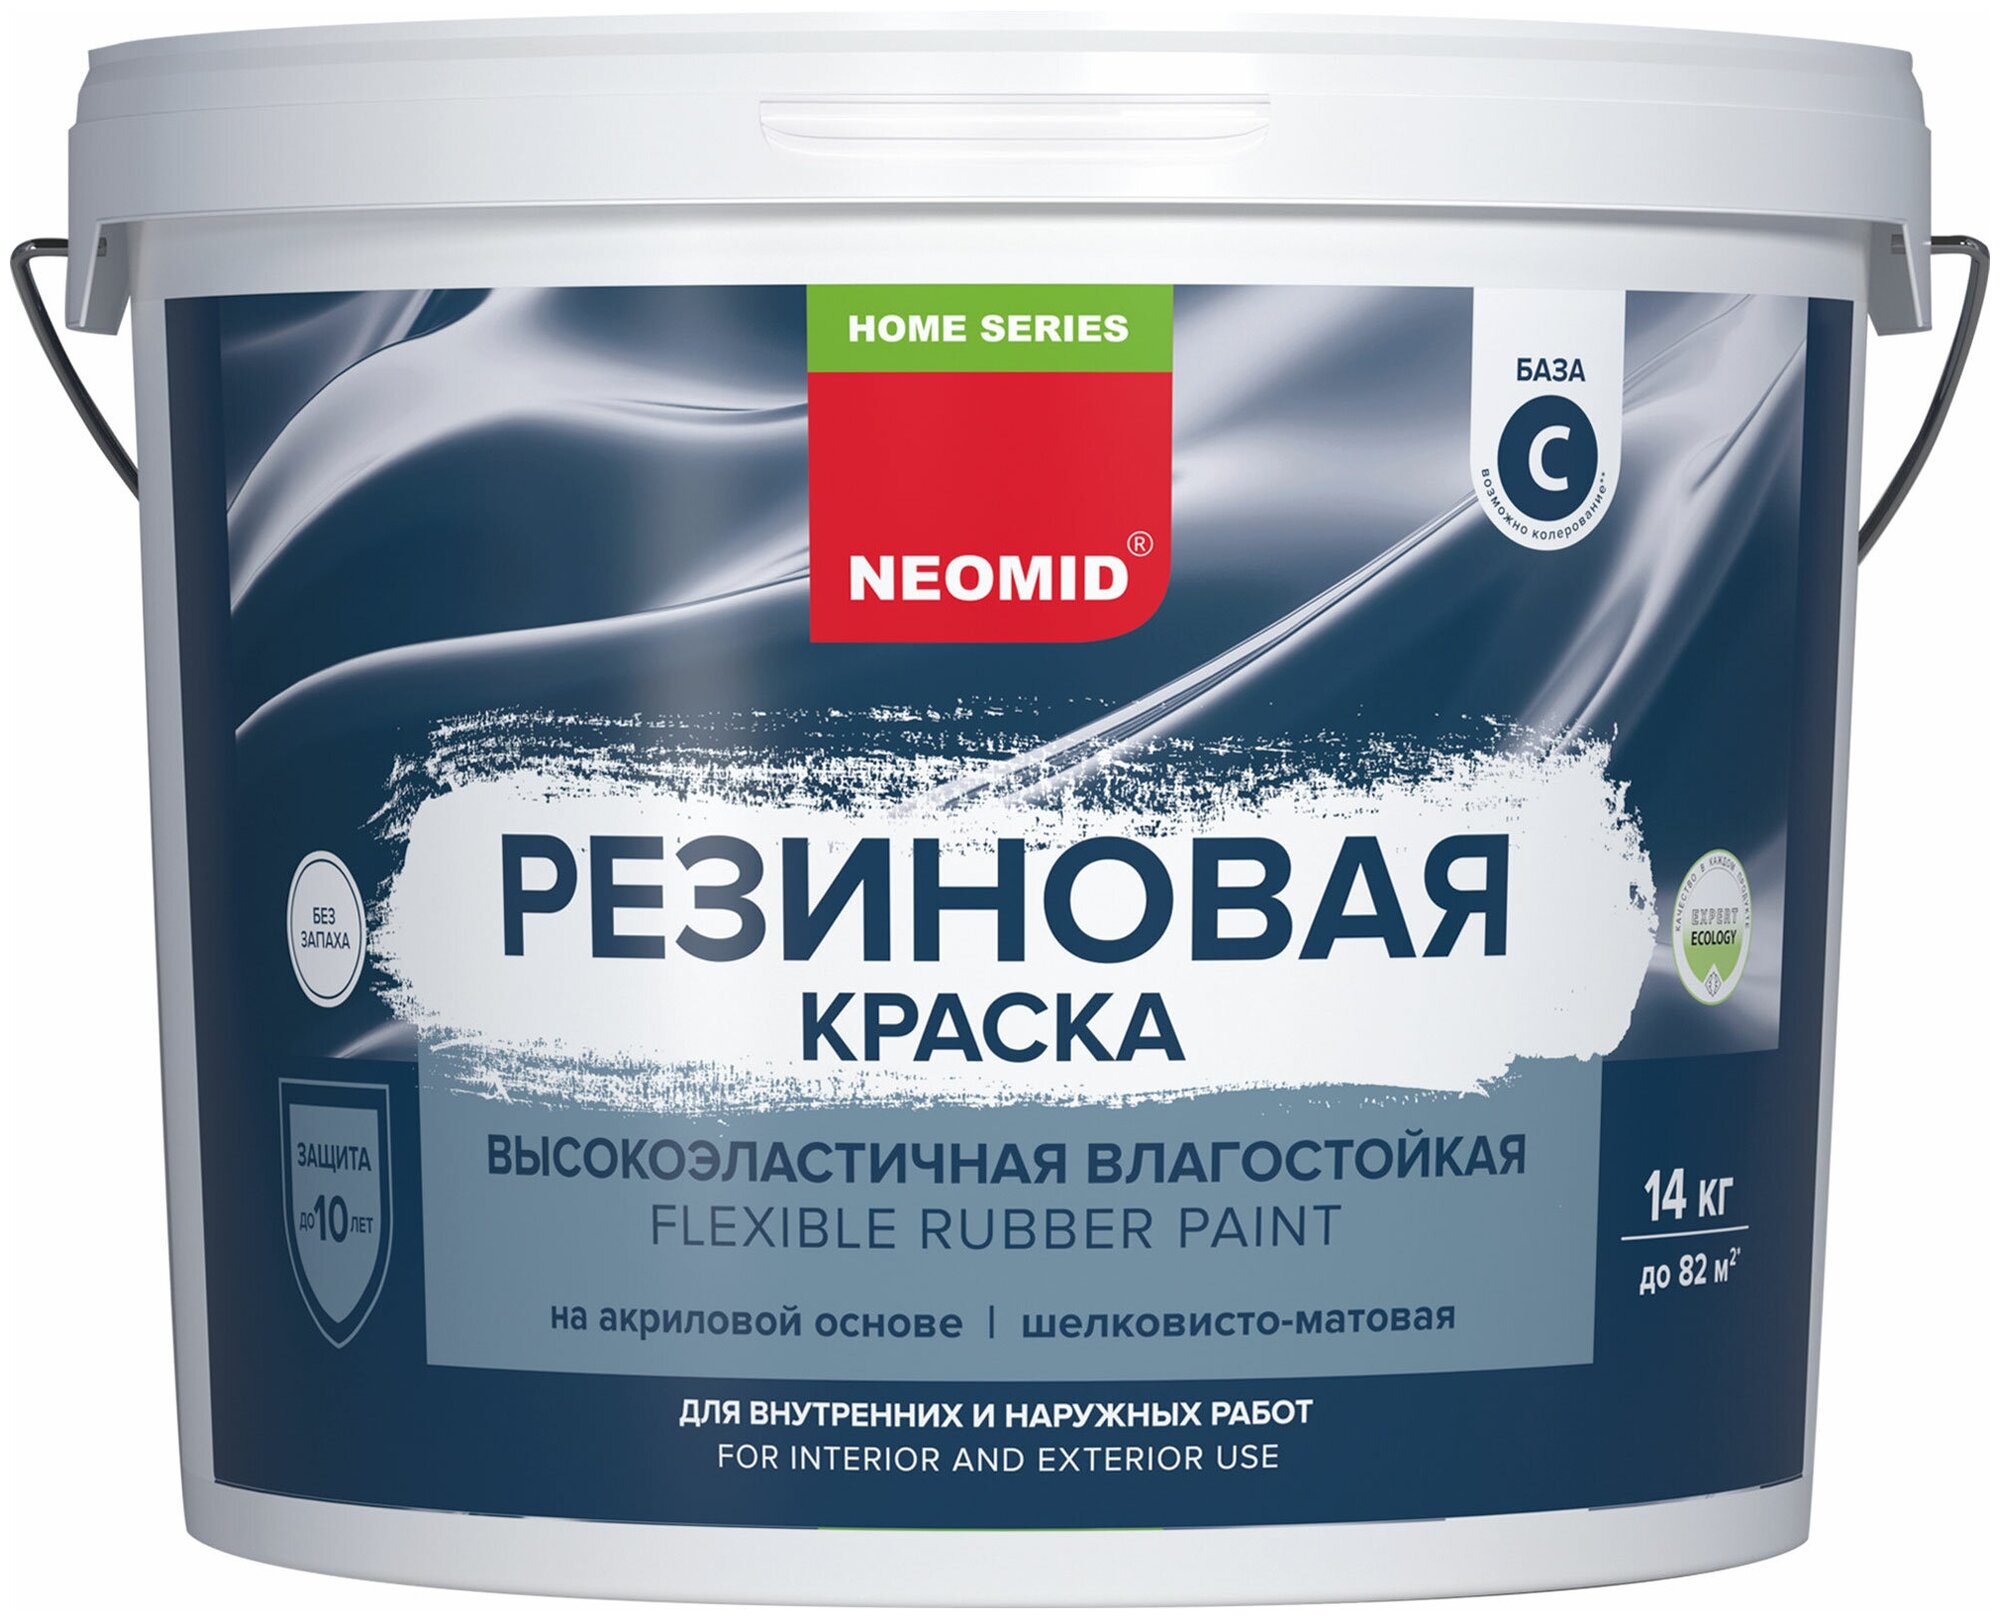 Краска Neomid Home Series резиновая универсальная 14 кг база С